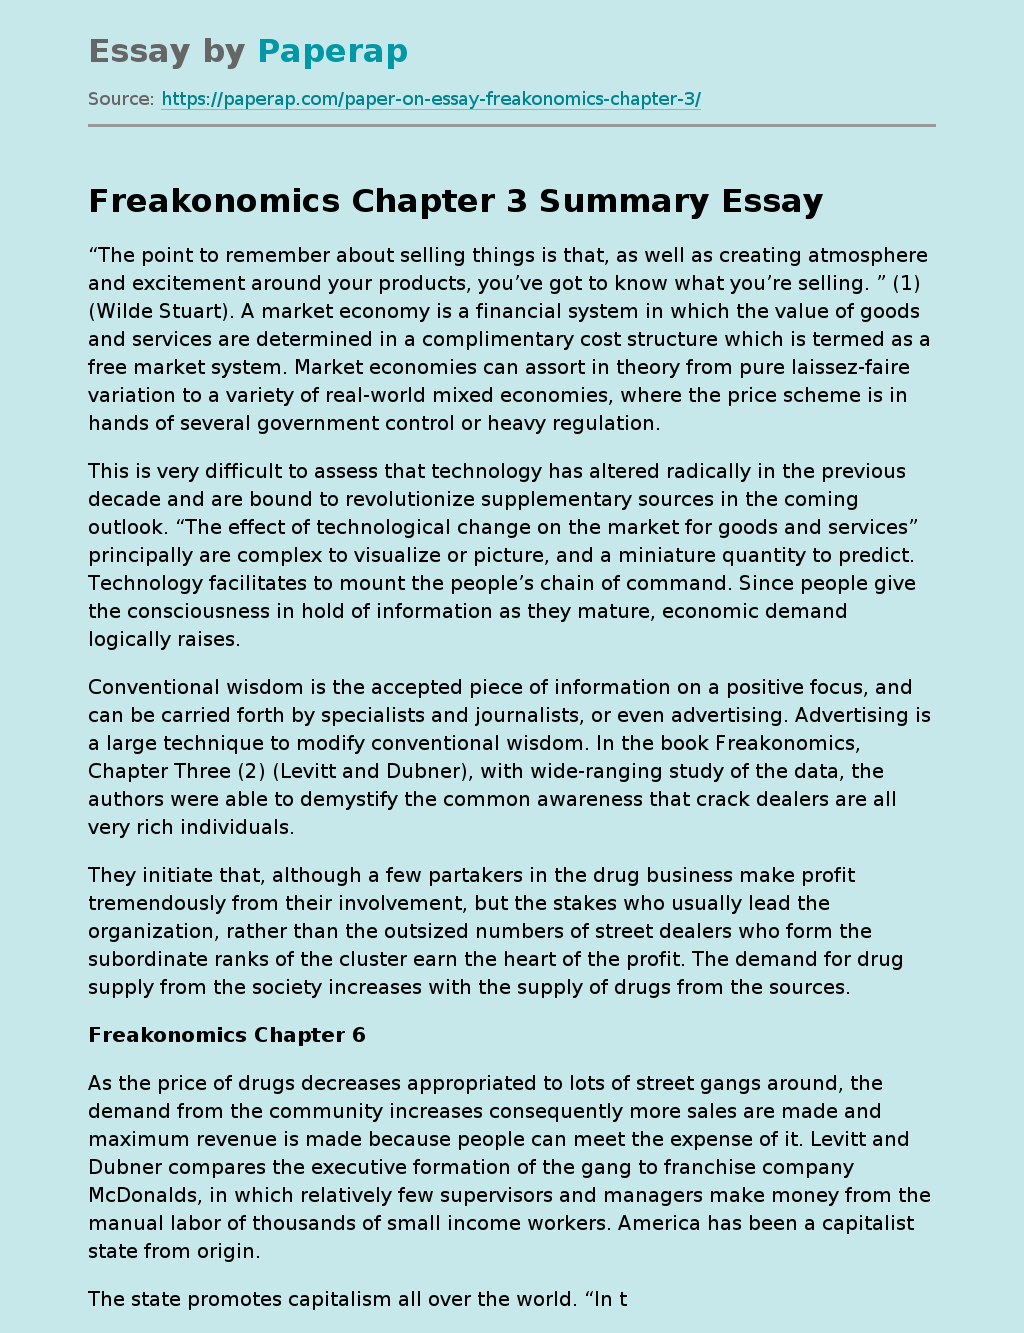 essay questions for freakonomics